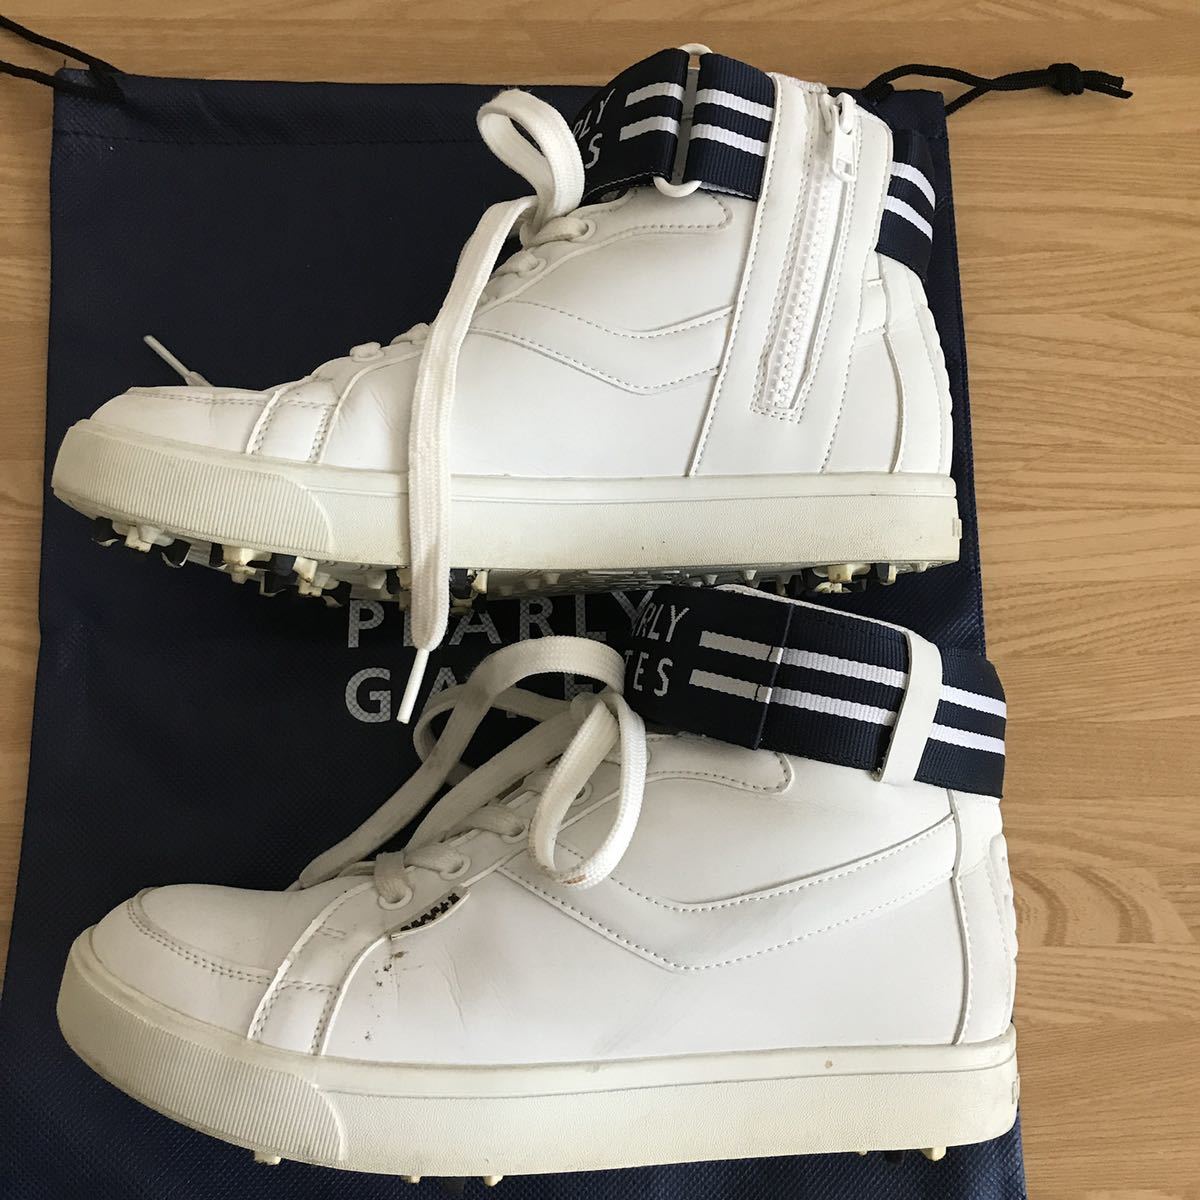  прекрасный товар Pearly Gates - ikatto Golf шиповки спортивные туфли 23.5 см белый Logo туфли для гольфа 